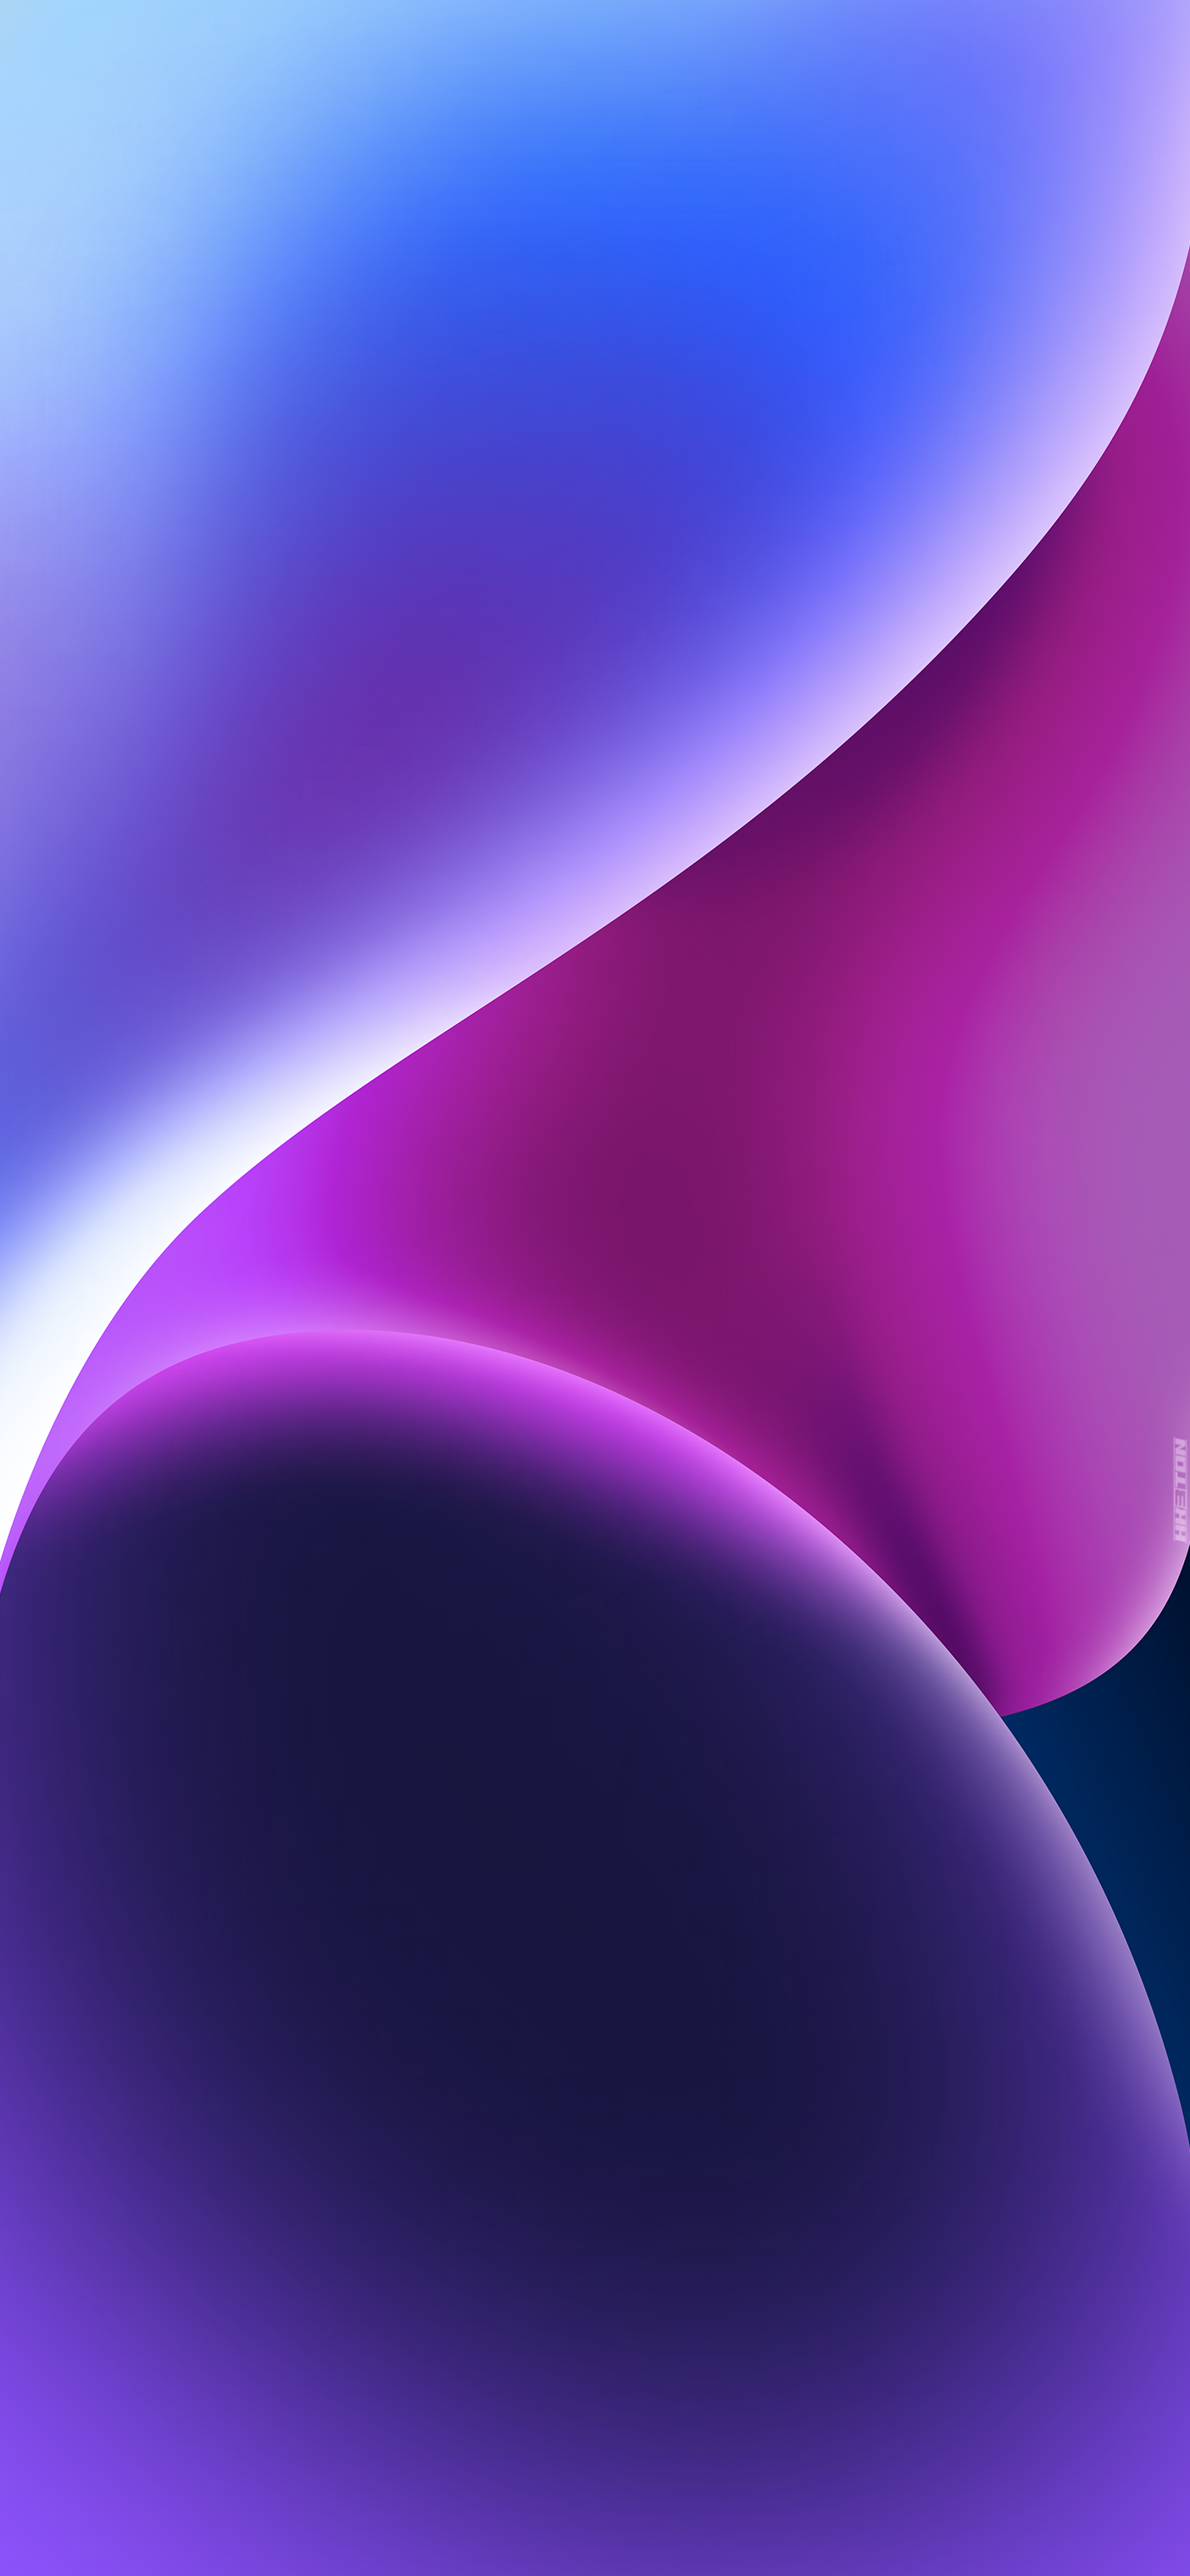 iPhone 14 màu tím đậm của Hk3ToN là một trong những sản phẩm đáng mong đợi nhất cho những người yêu thích công nghệ. Bạn sẽ được chiêm ngưỡng vẻ đẹp cuốn hút của màu tím đậm trên chiếc iPhone hoàn hảo của mình.